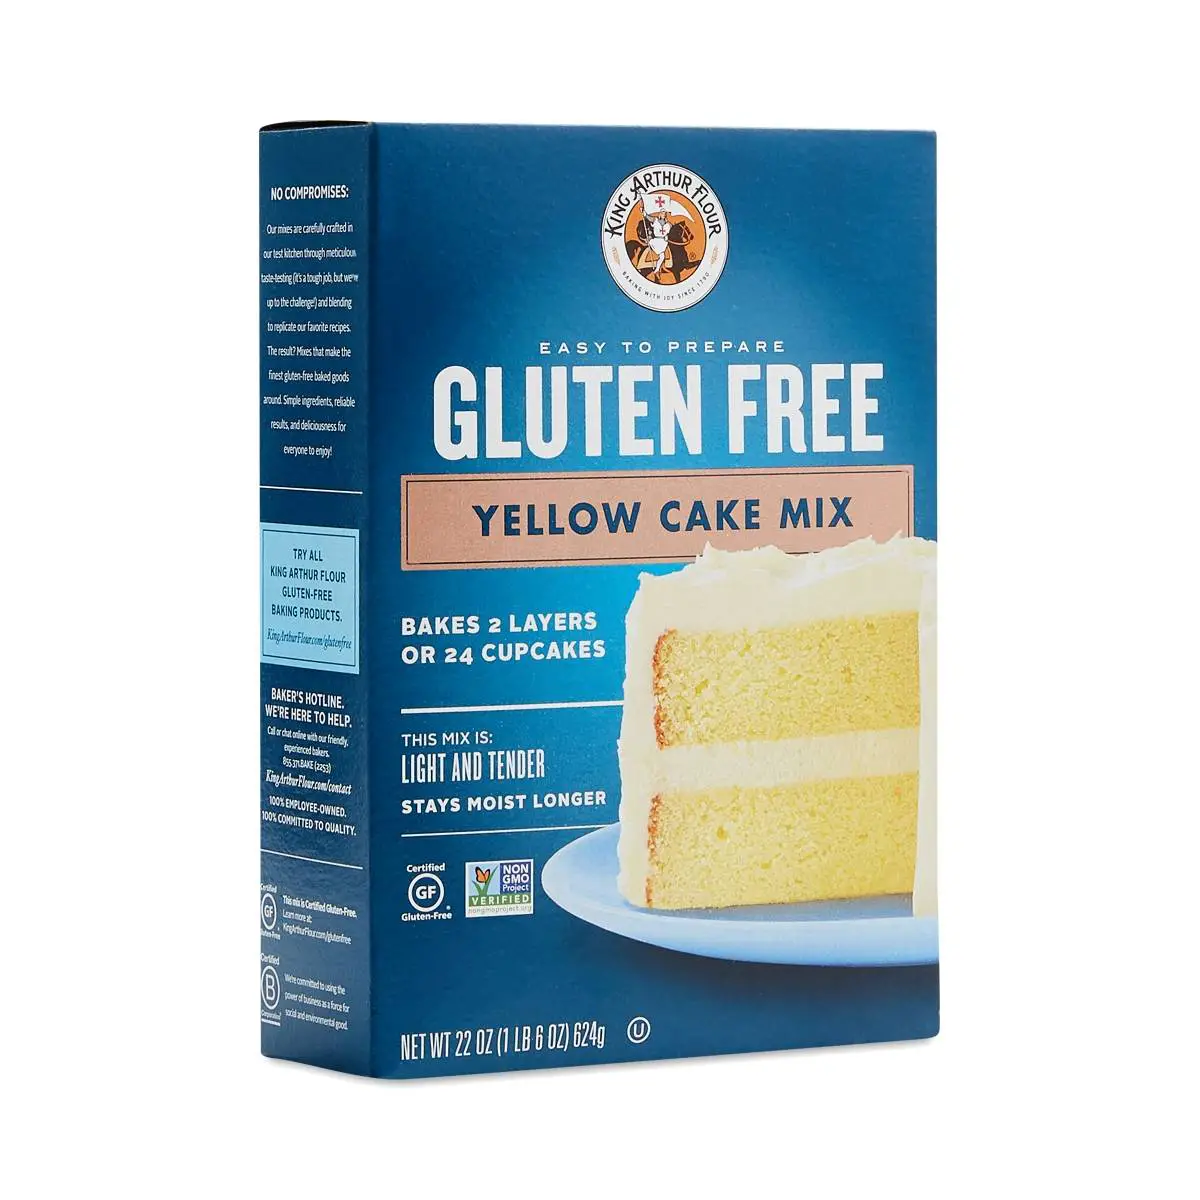 Gluten Free Yellow Cake Mix by King Arthur Flour